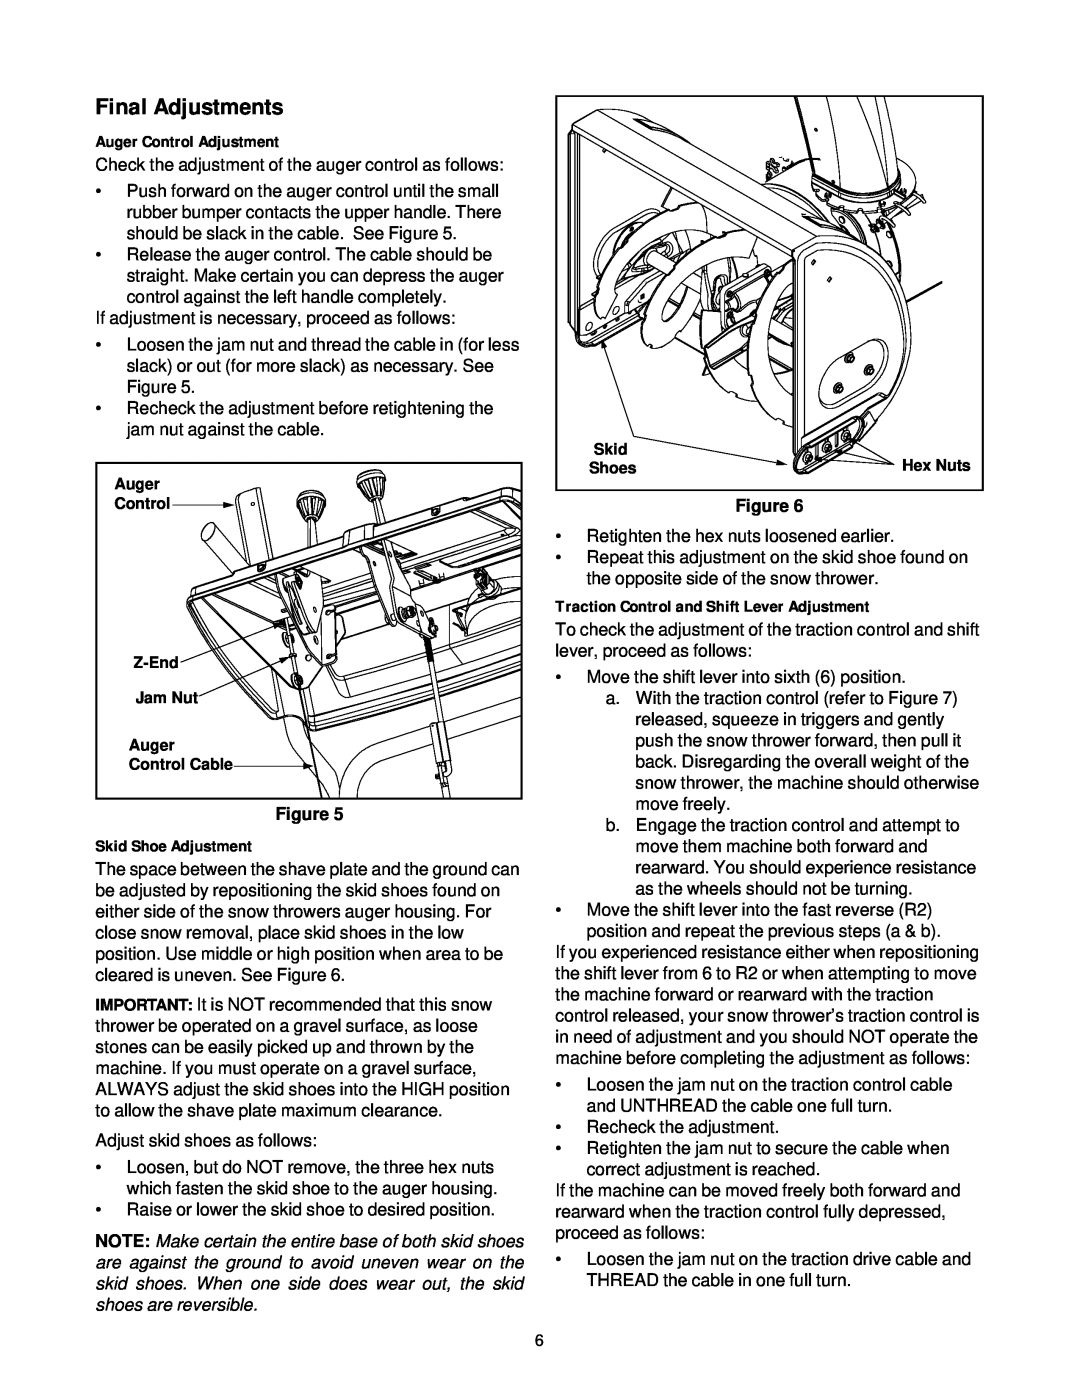 White Outdoor 31AH7Q3G190 manual Final Adjustments, Auger Control Adjustment, Skid Shoe Adjustment, Figure 